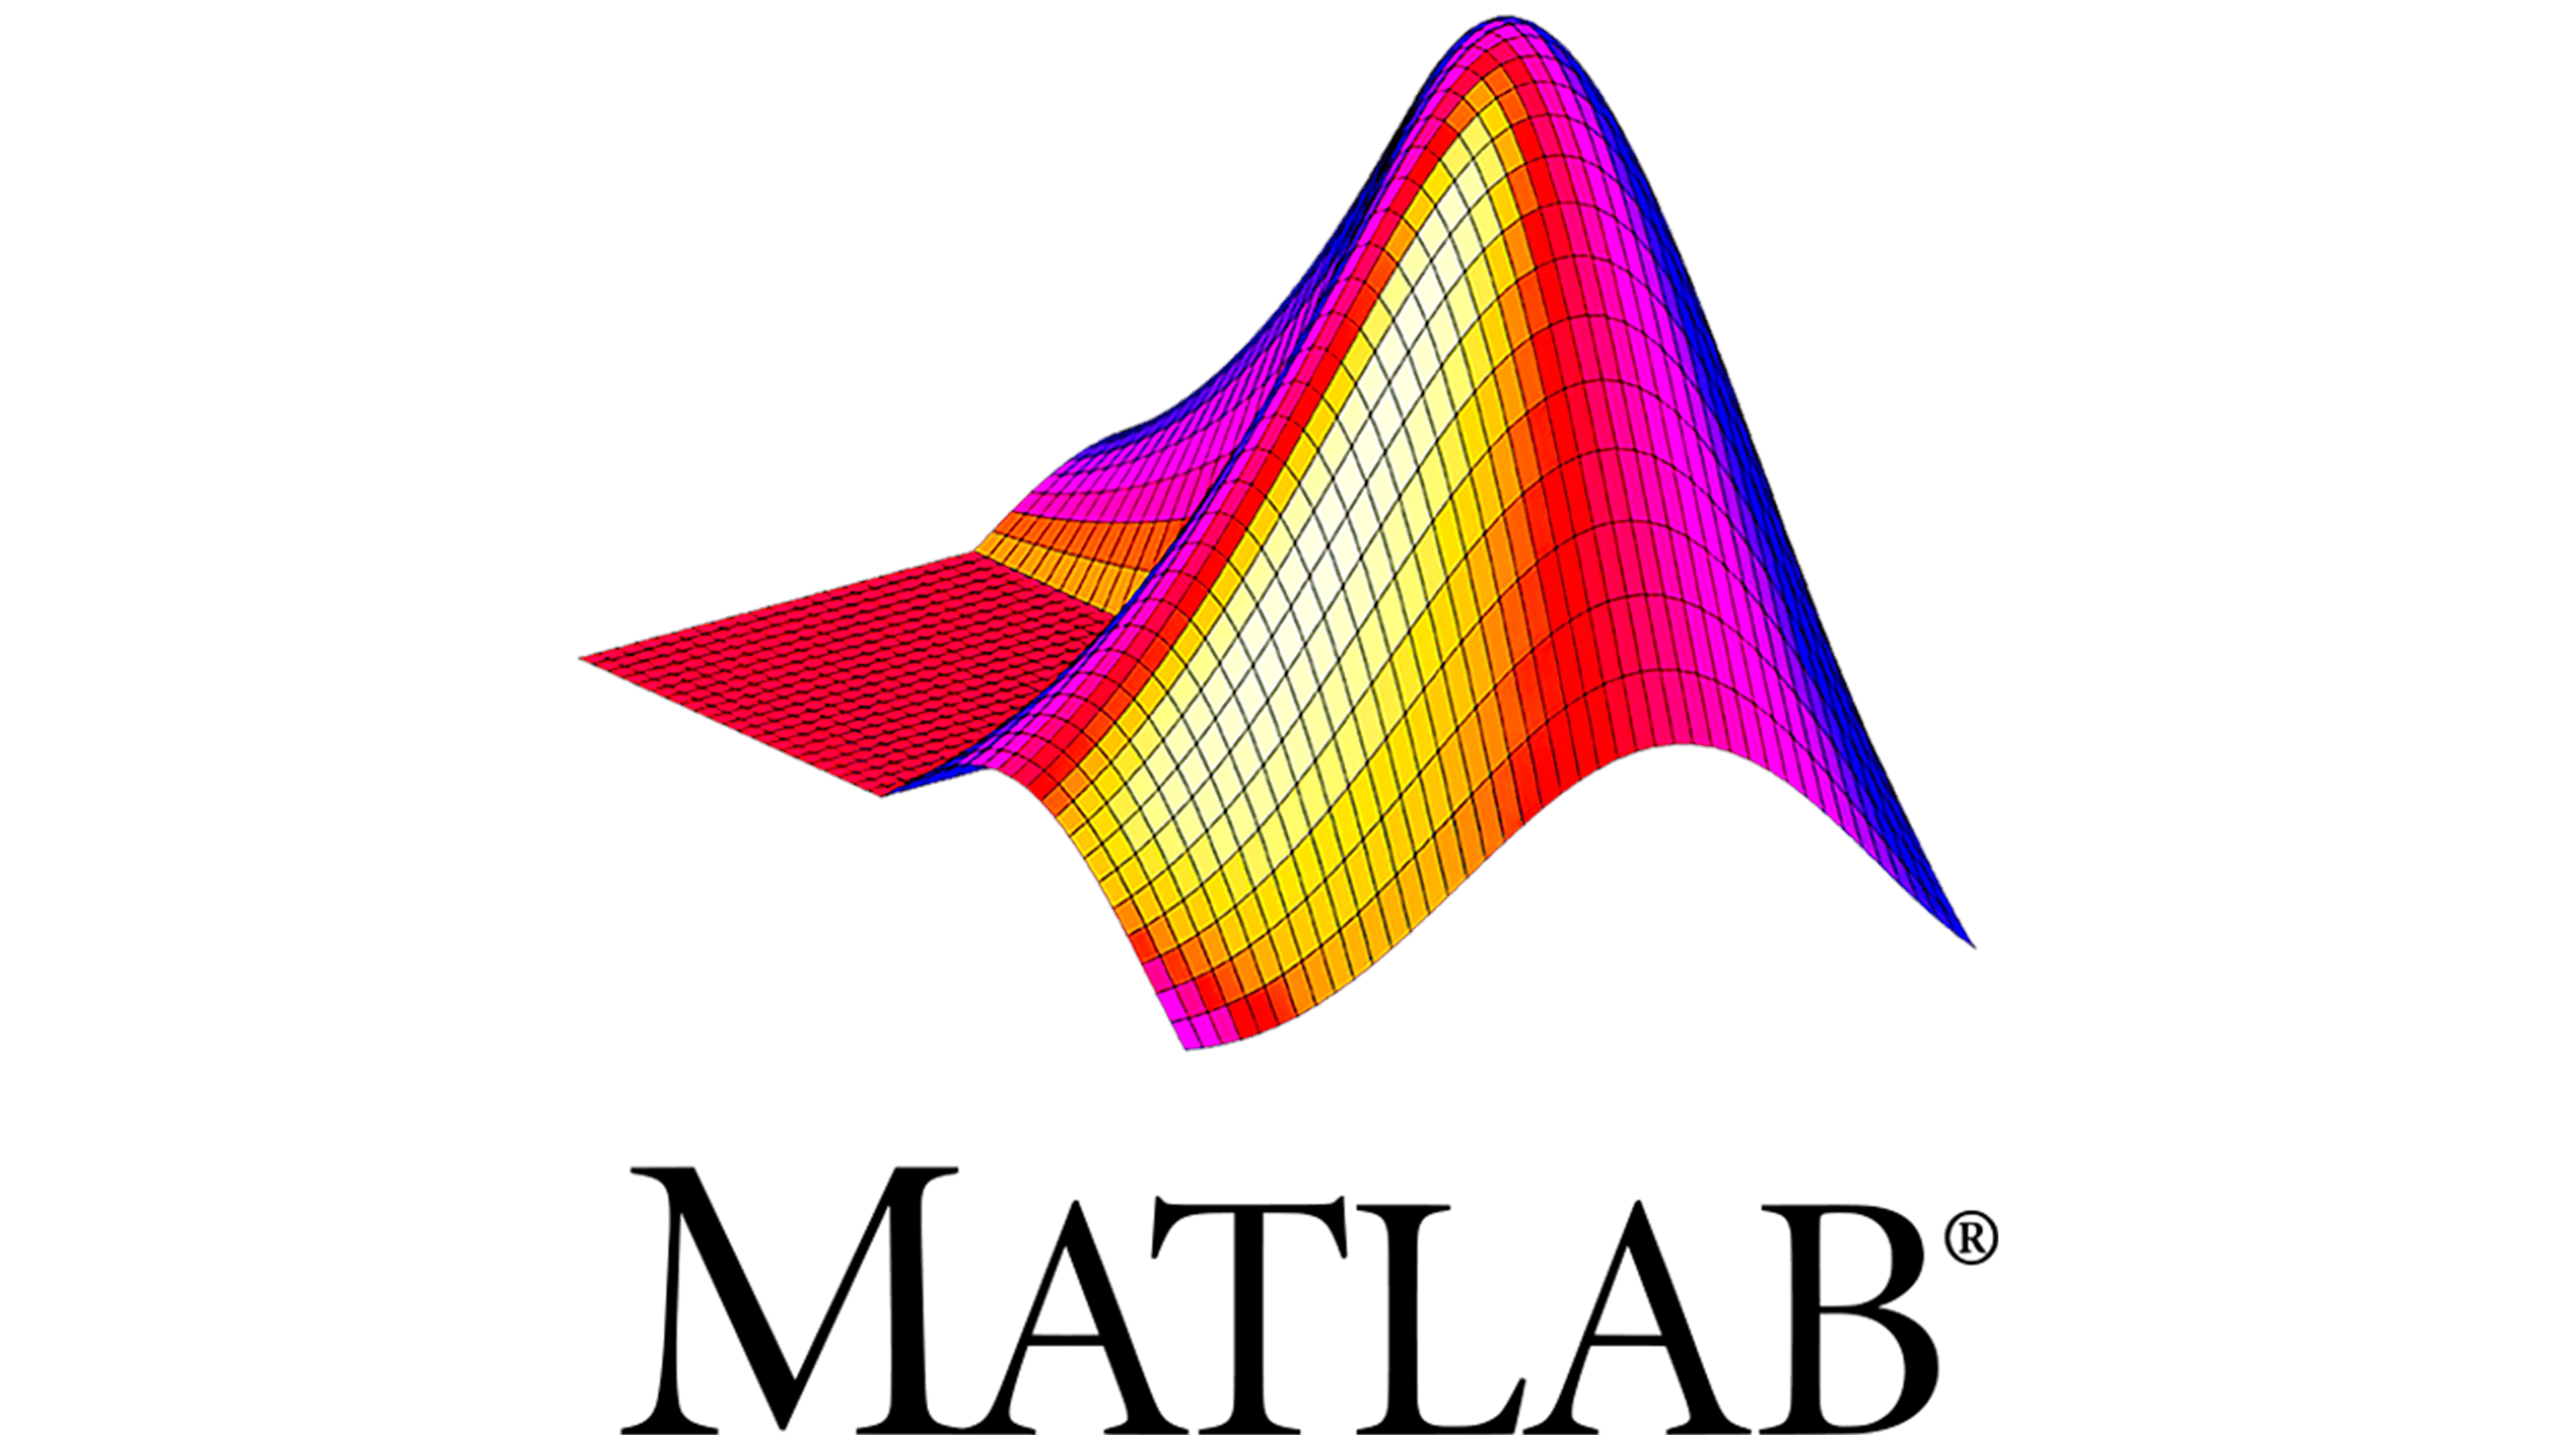 Matlab Logopng